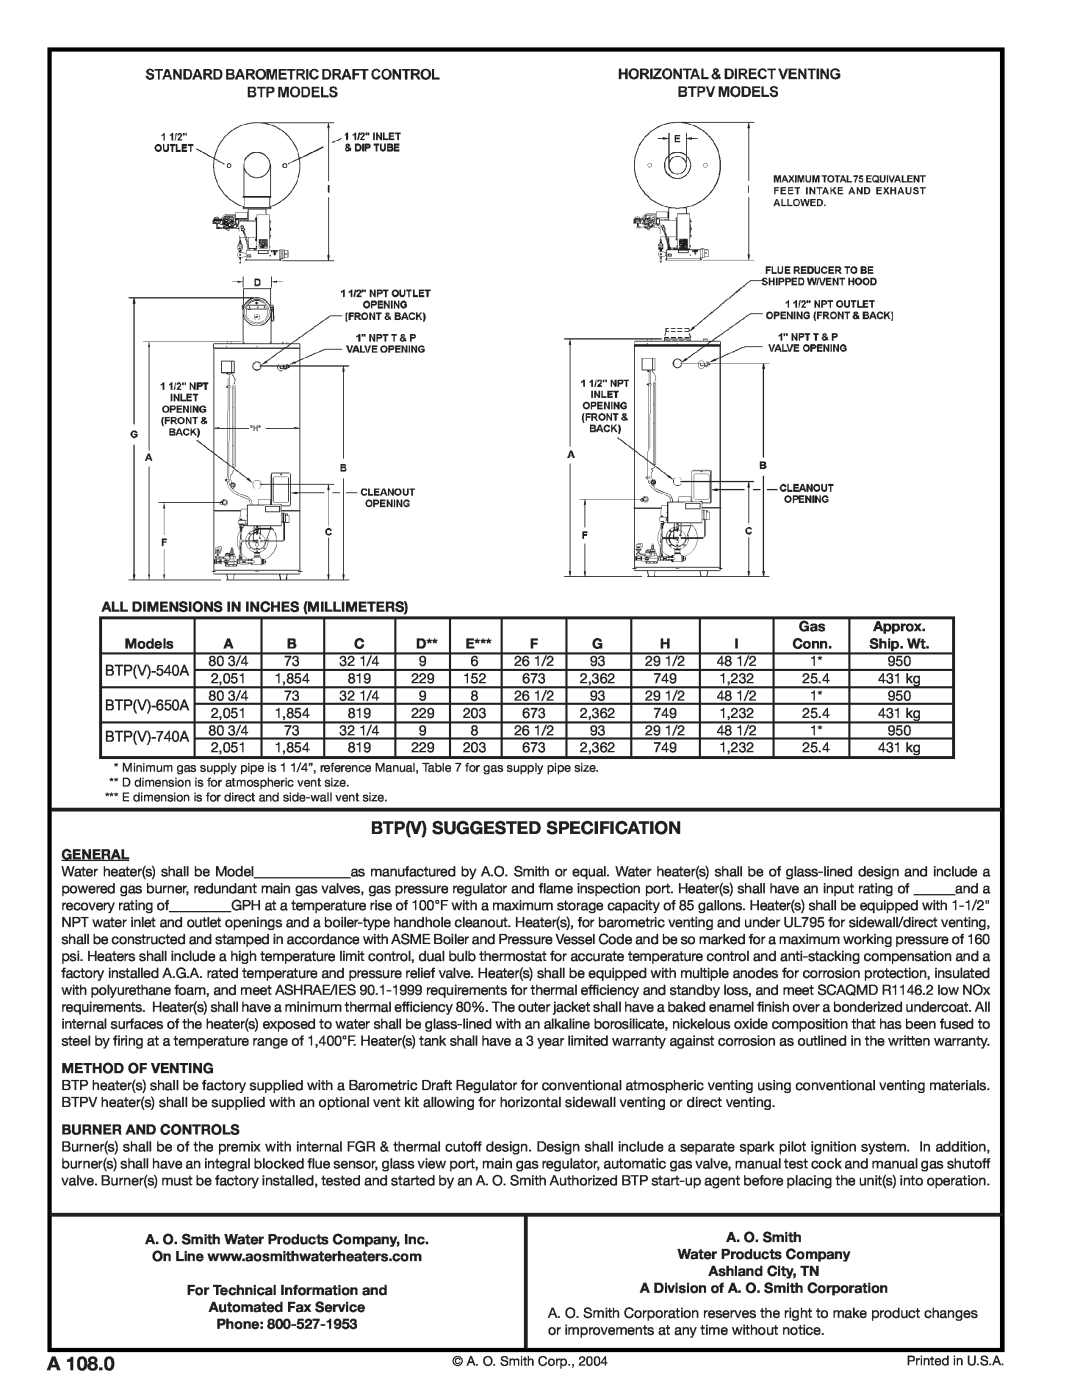 A.O. Smith BTPV-650A, BTP-740A, BTP-540A, BTP-650A warranty Btpv Suggested Specification 